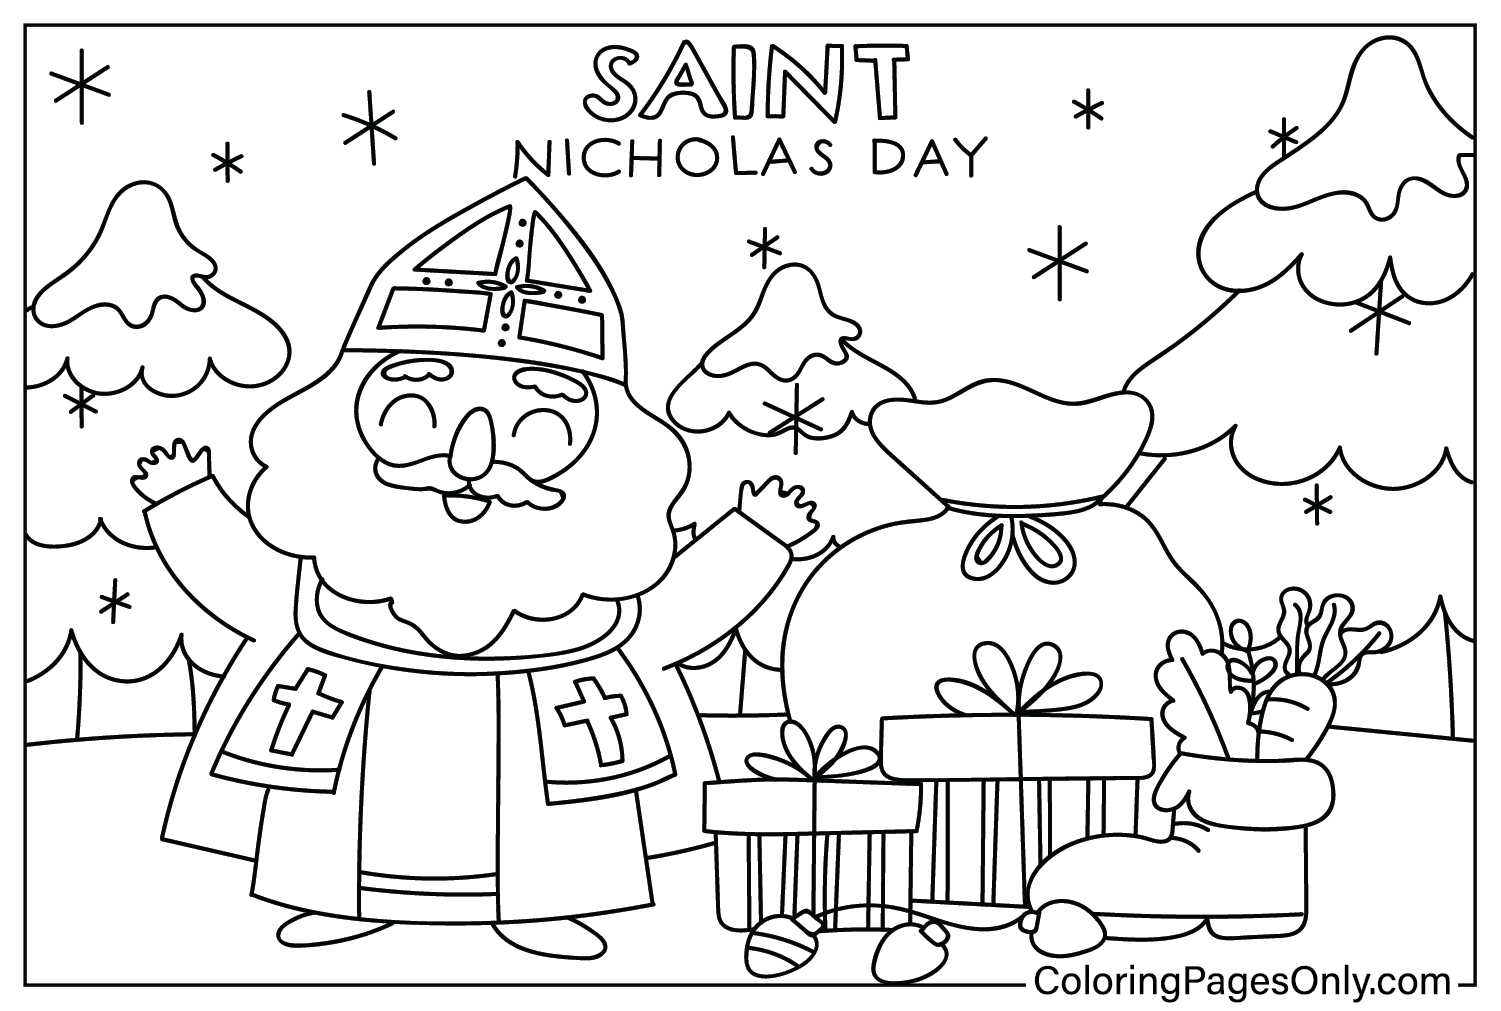 Página para colorir do Dia de São Nicolau grátis no Dia de São Nicolau